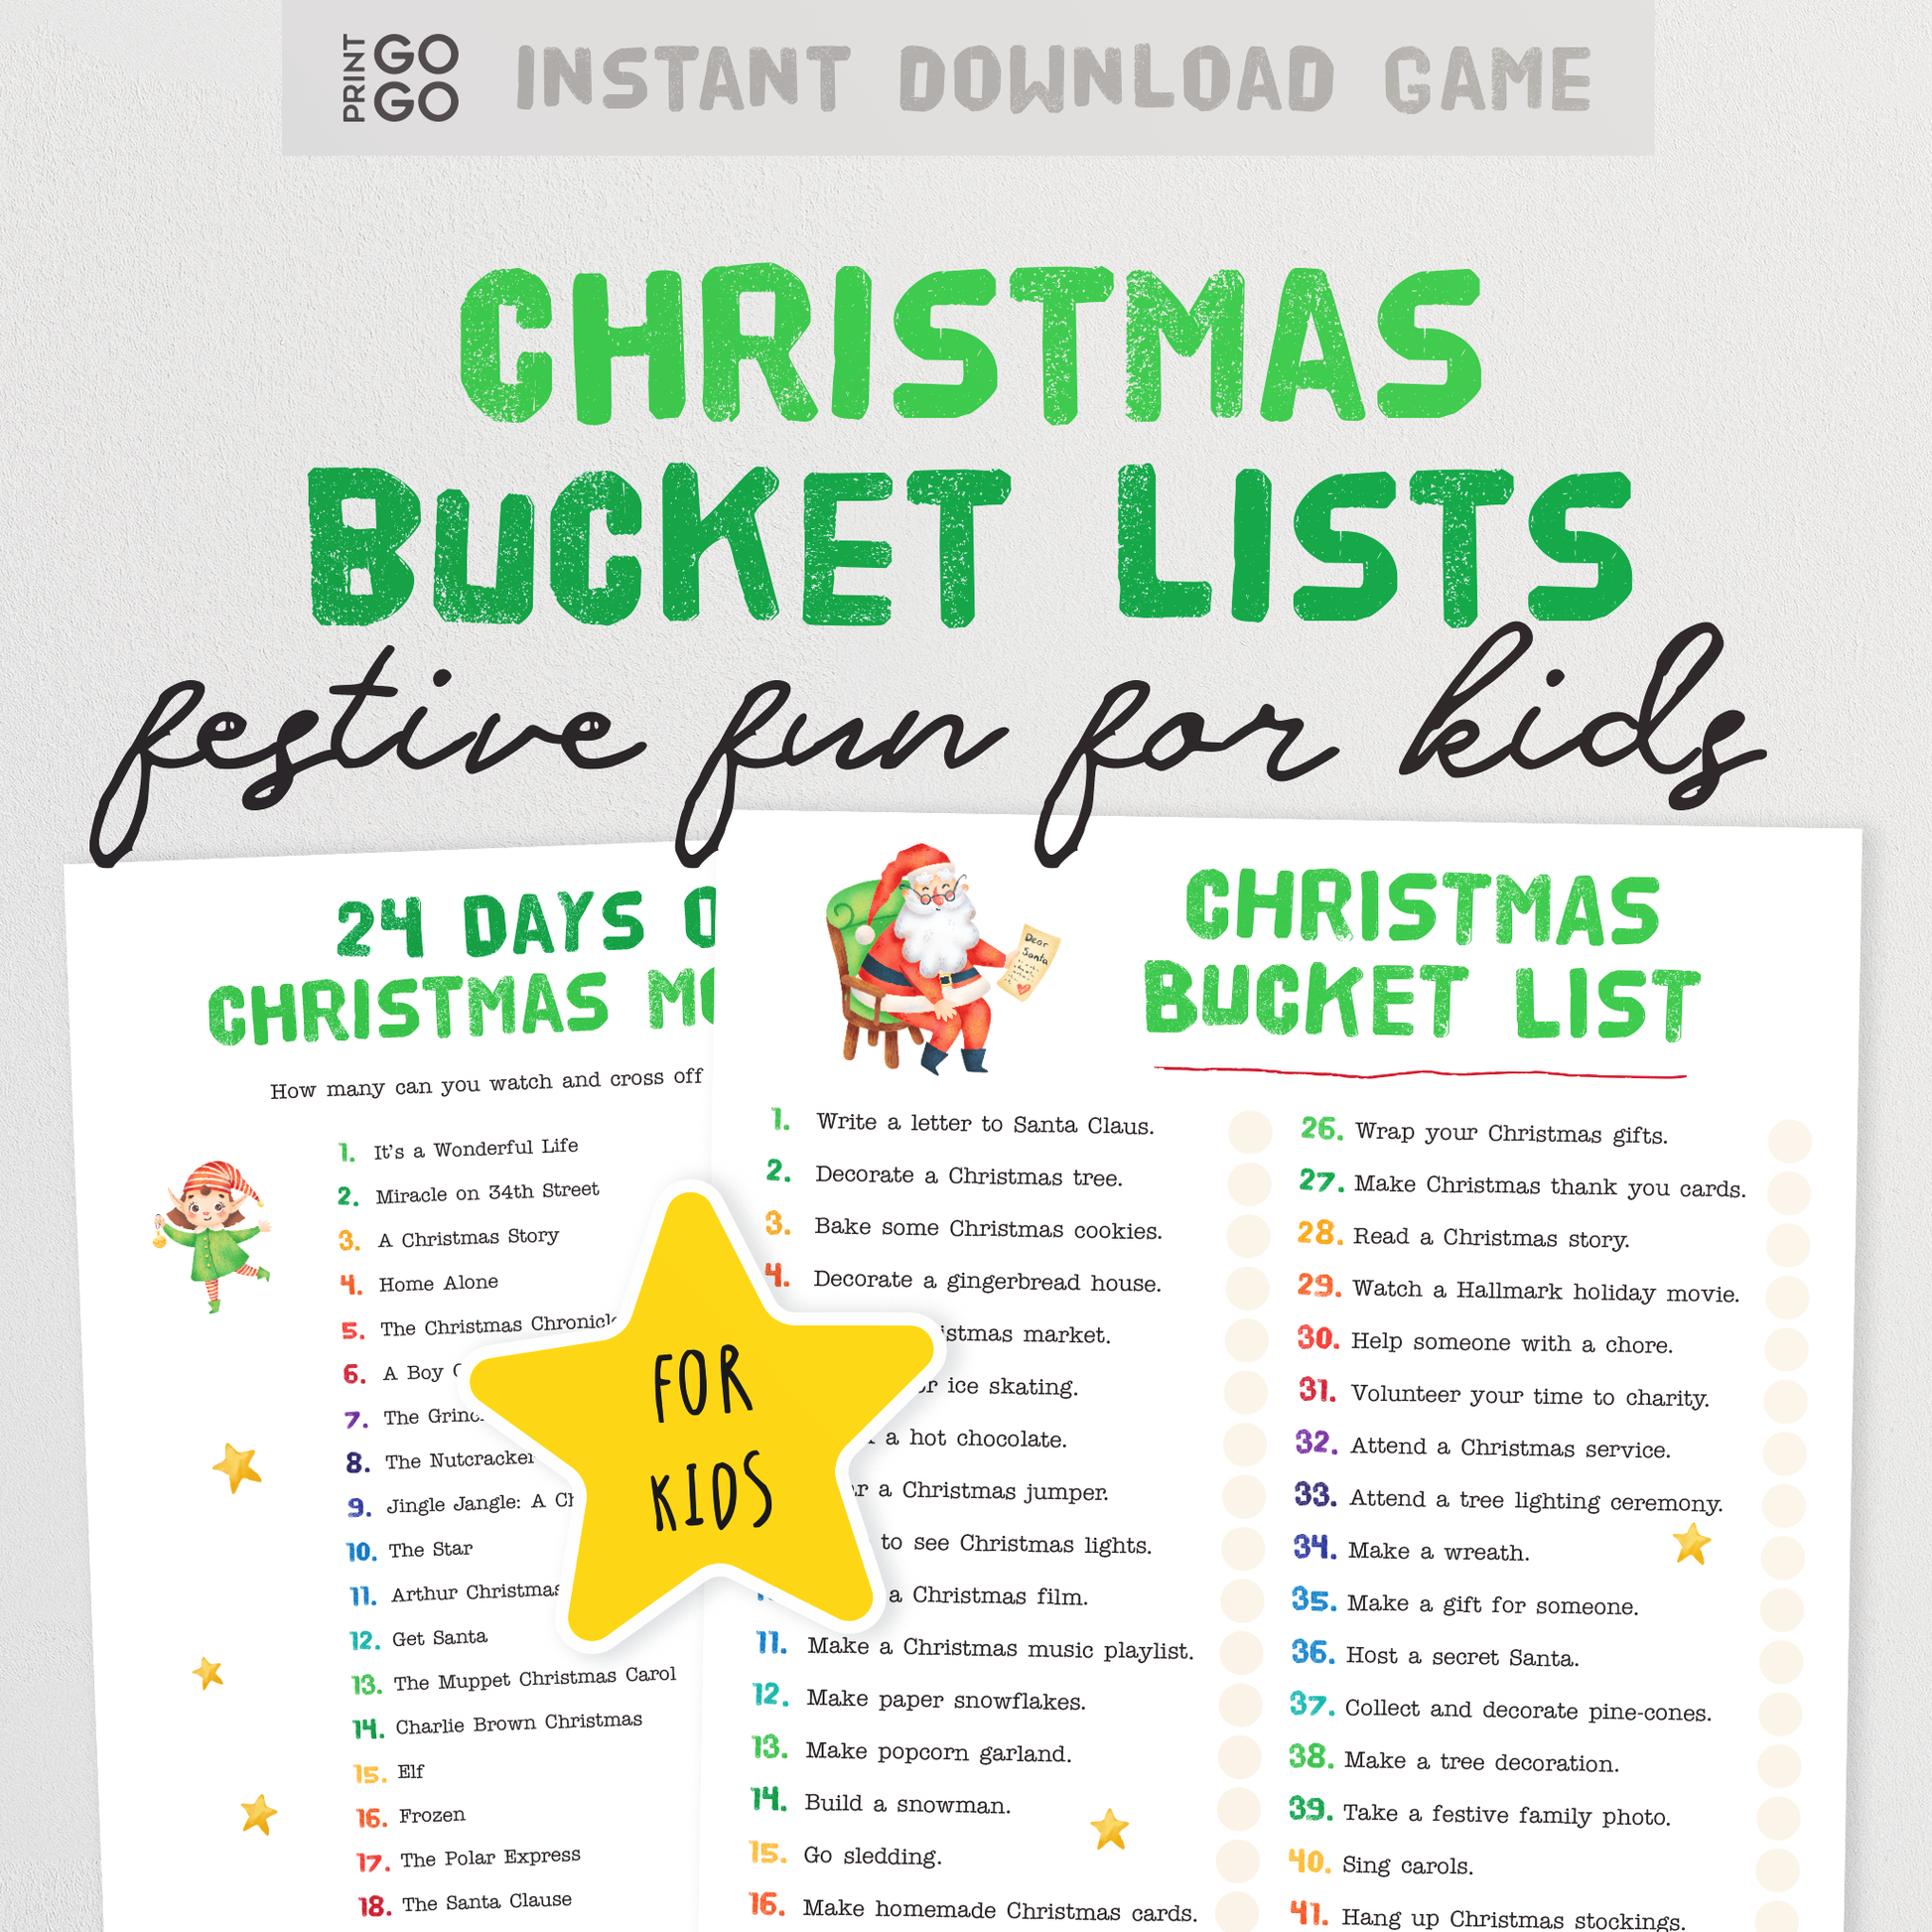 Christmas Bucket List and 24 Days of Christmas Movies